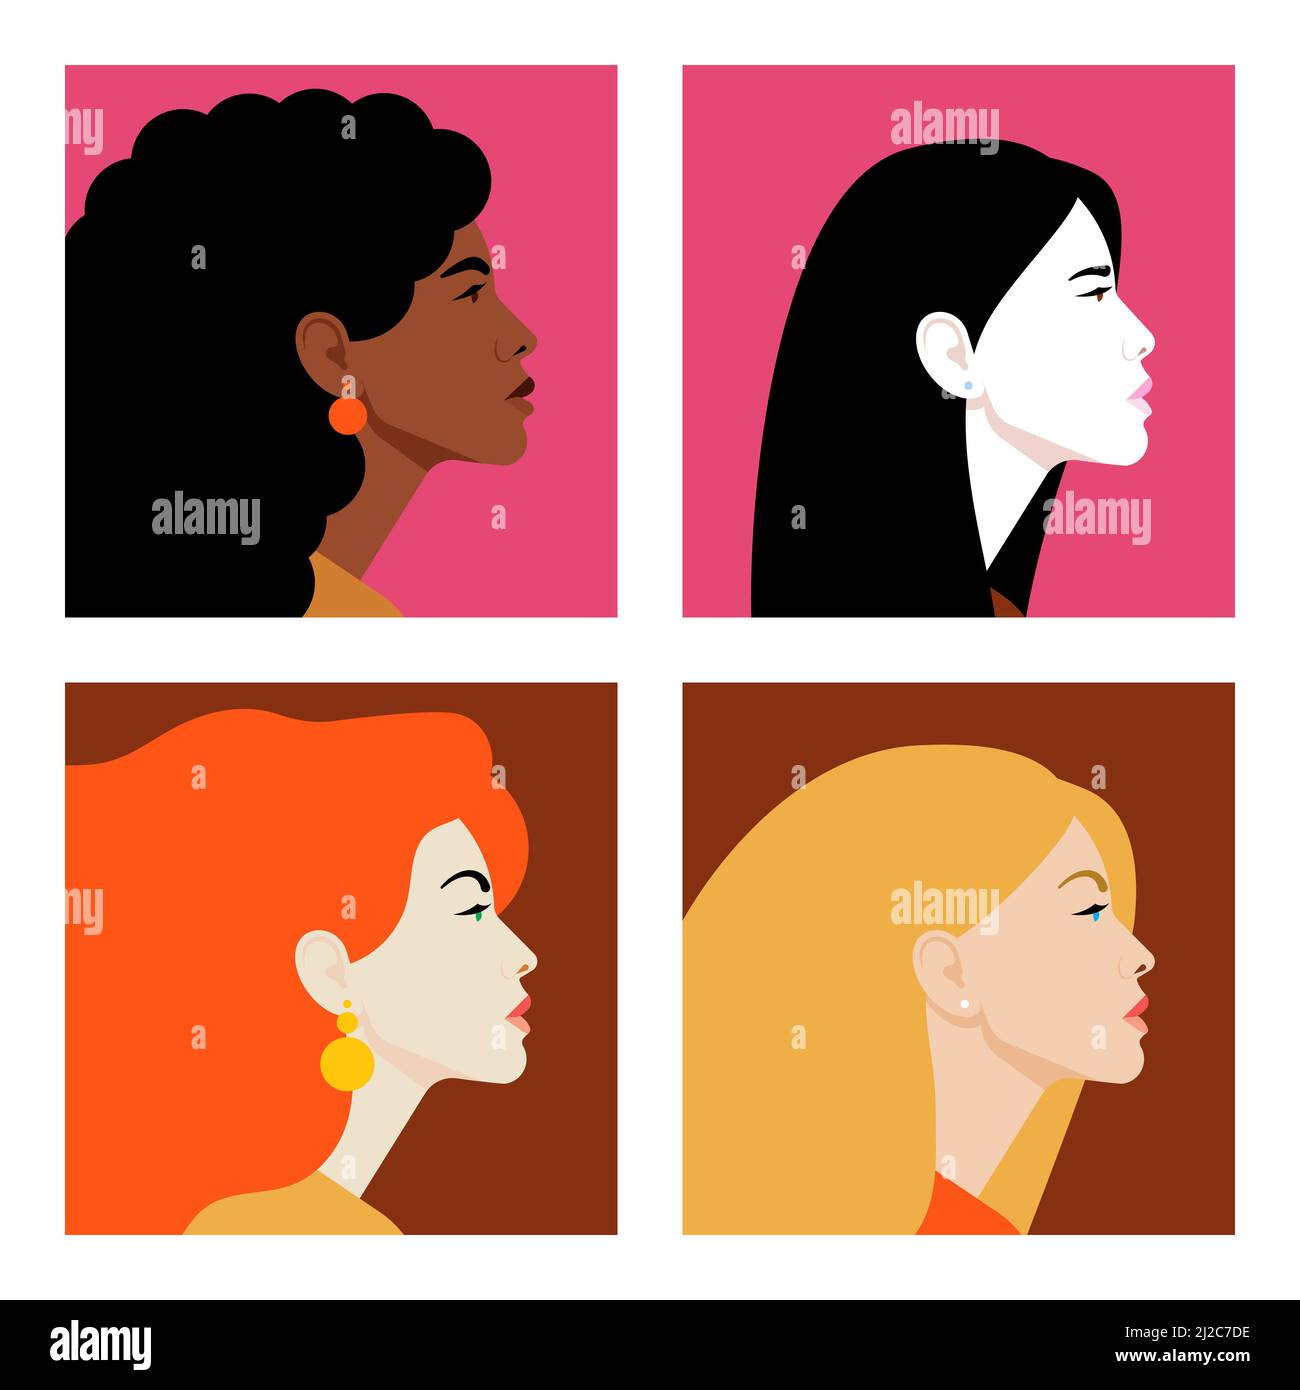 Gesichter von Frauen im Profil. Frauen unterschiedlicher Nationalitäten und Kulturen. Vielfalt. Avatare. Vektorgrafik flach Stock Vektor